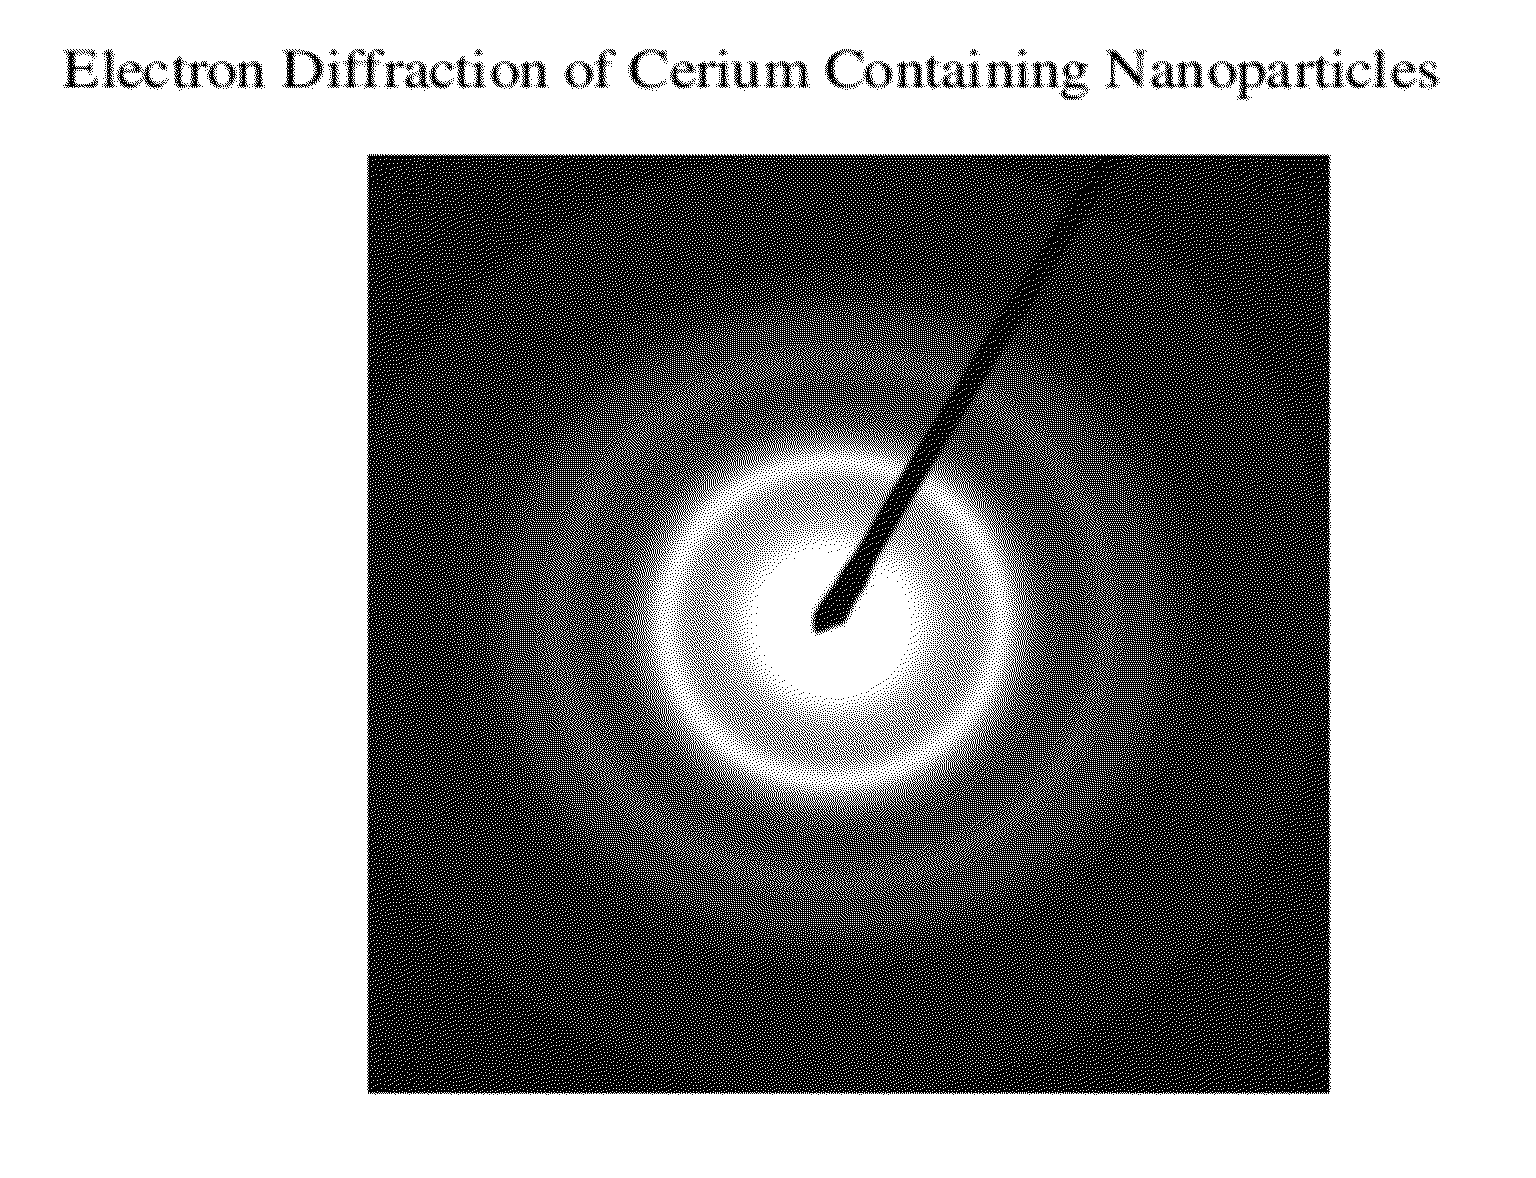 Cerium containing nanoparticles prepared in non-polar solvent